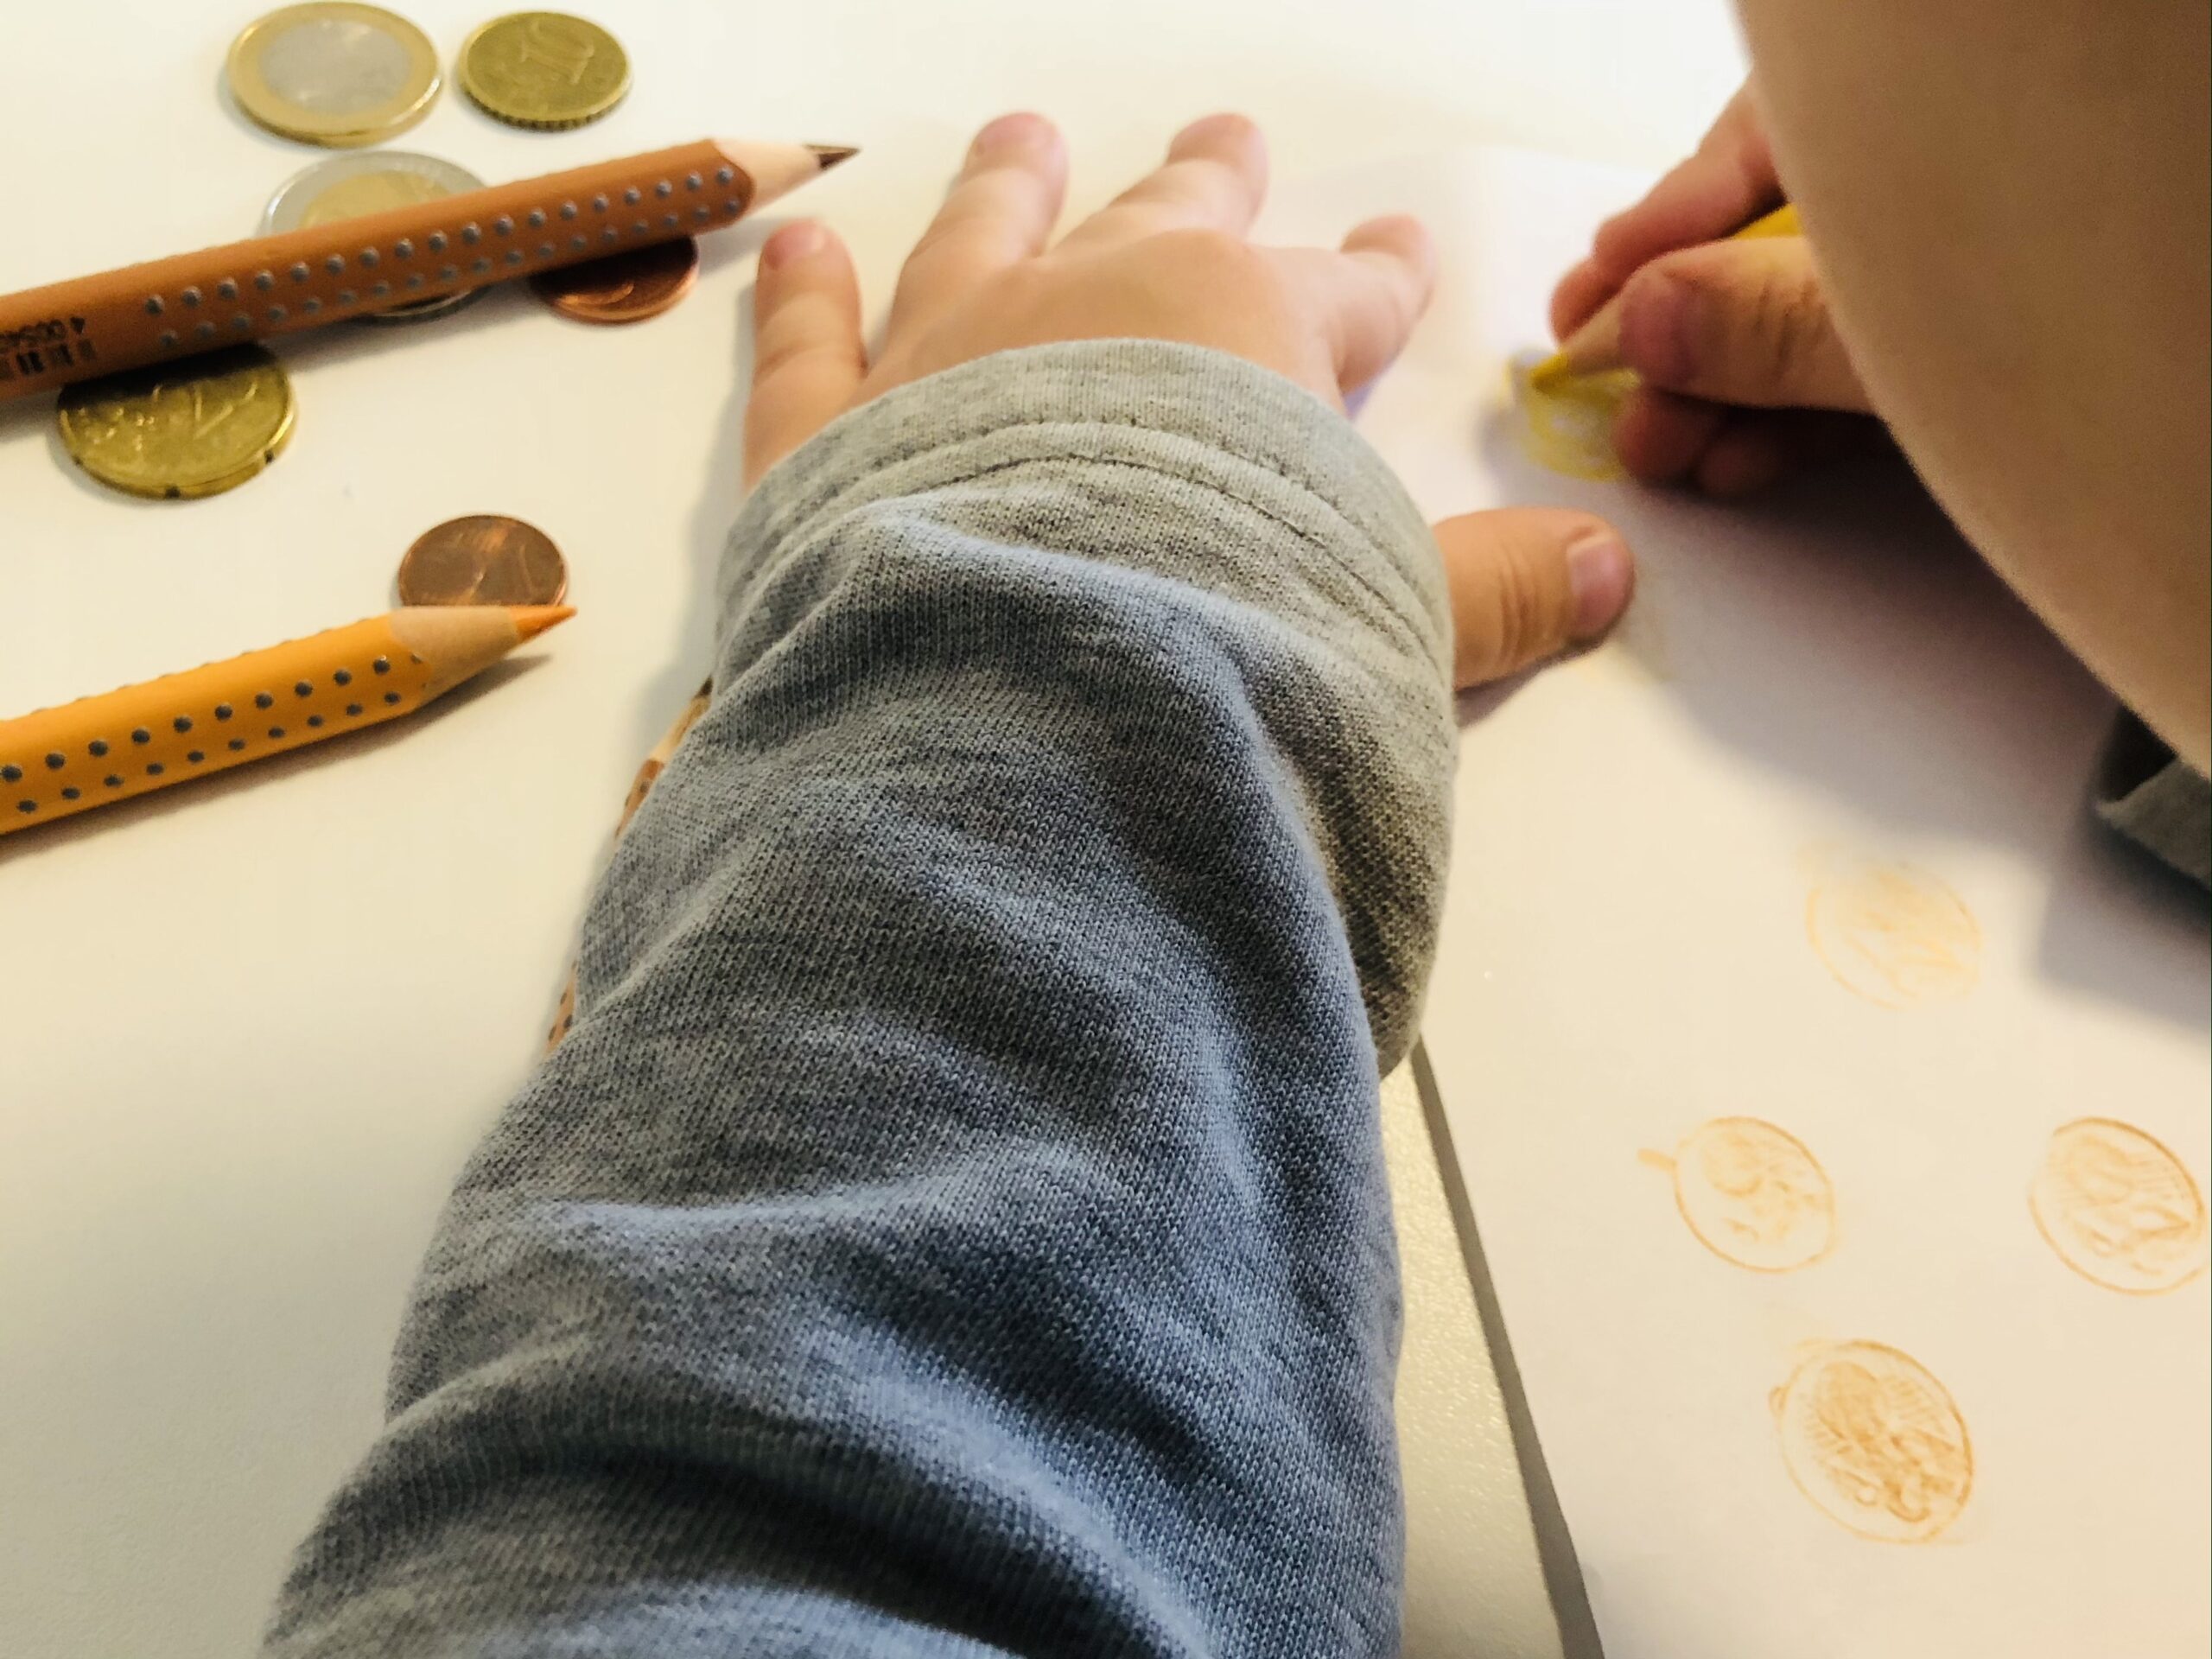 Bild zum Schritt 5 für das Bastel- und DIY-Abenteuer für Kinder: 'Malt so mehrere Münzen und wechselt die Farben je nach...'